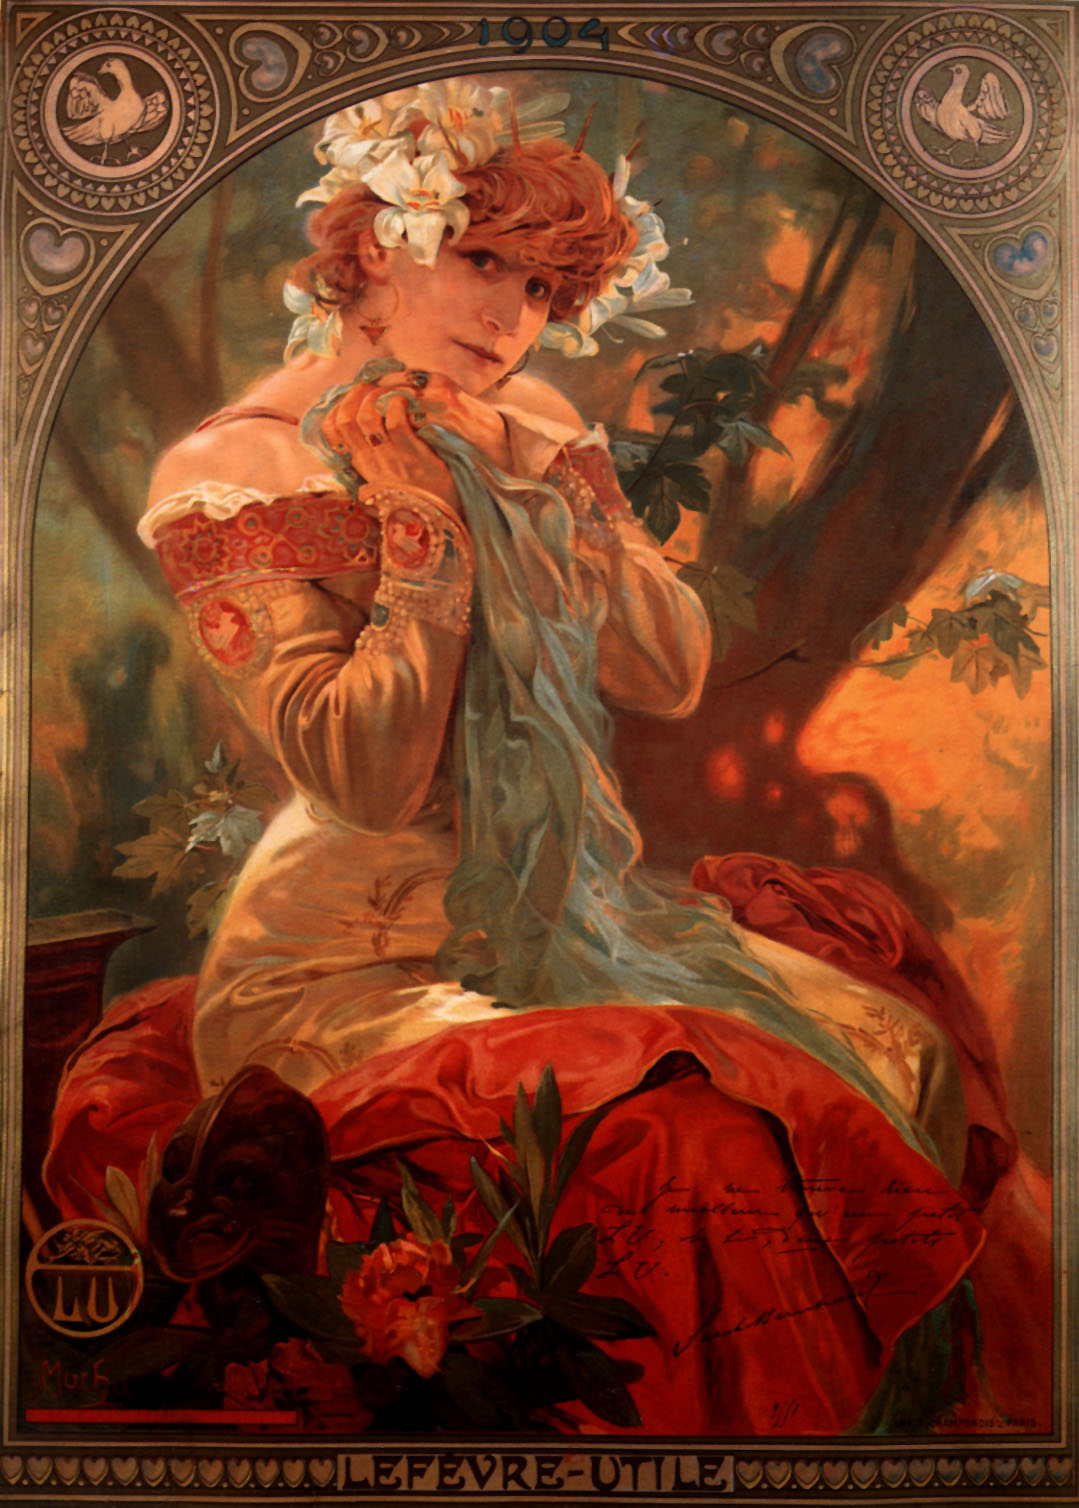 lefevre-utile-1903